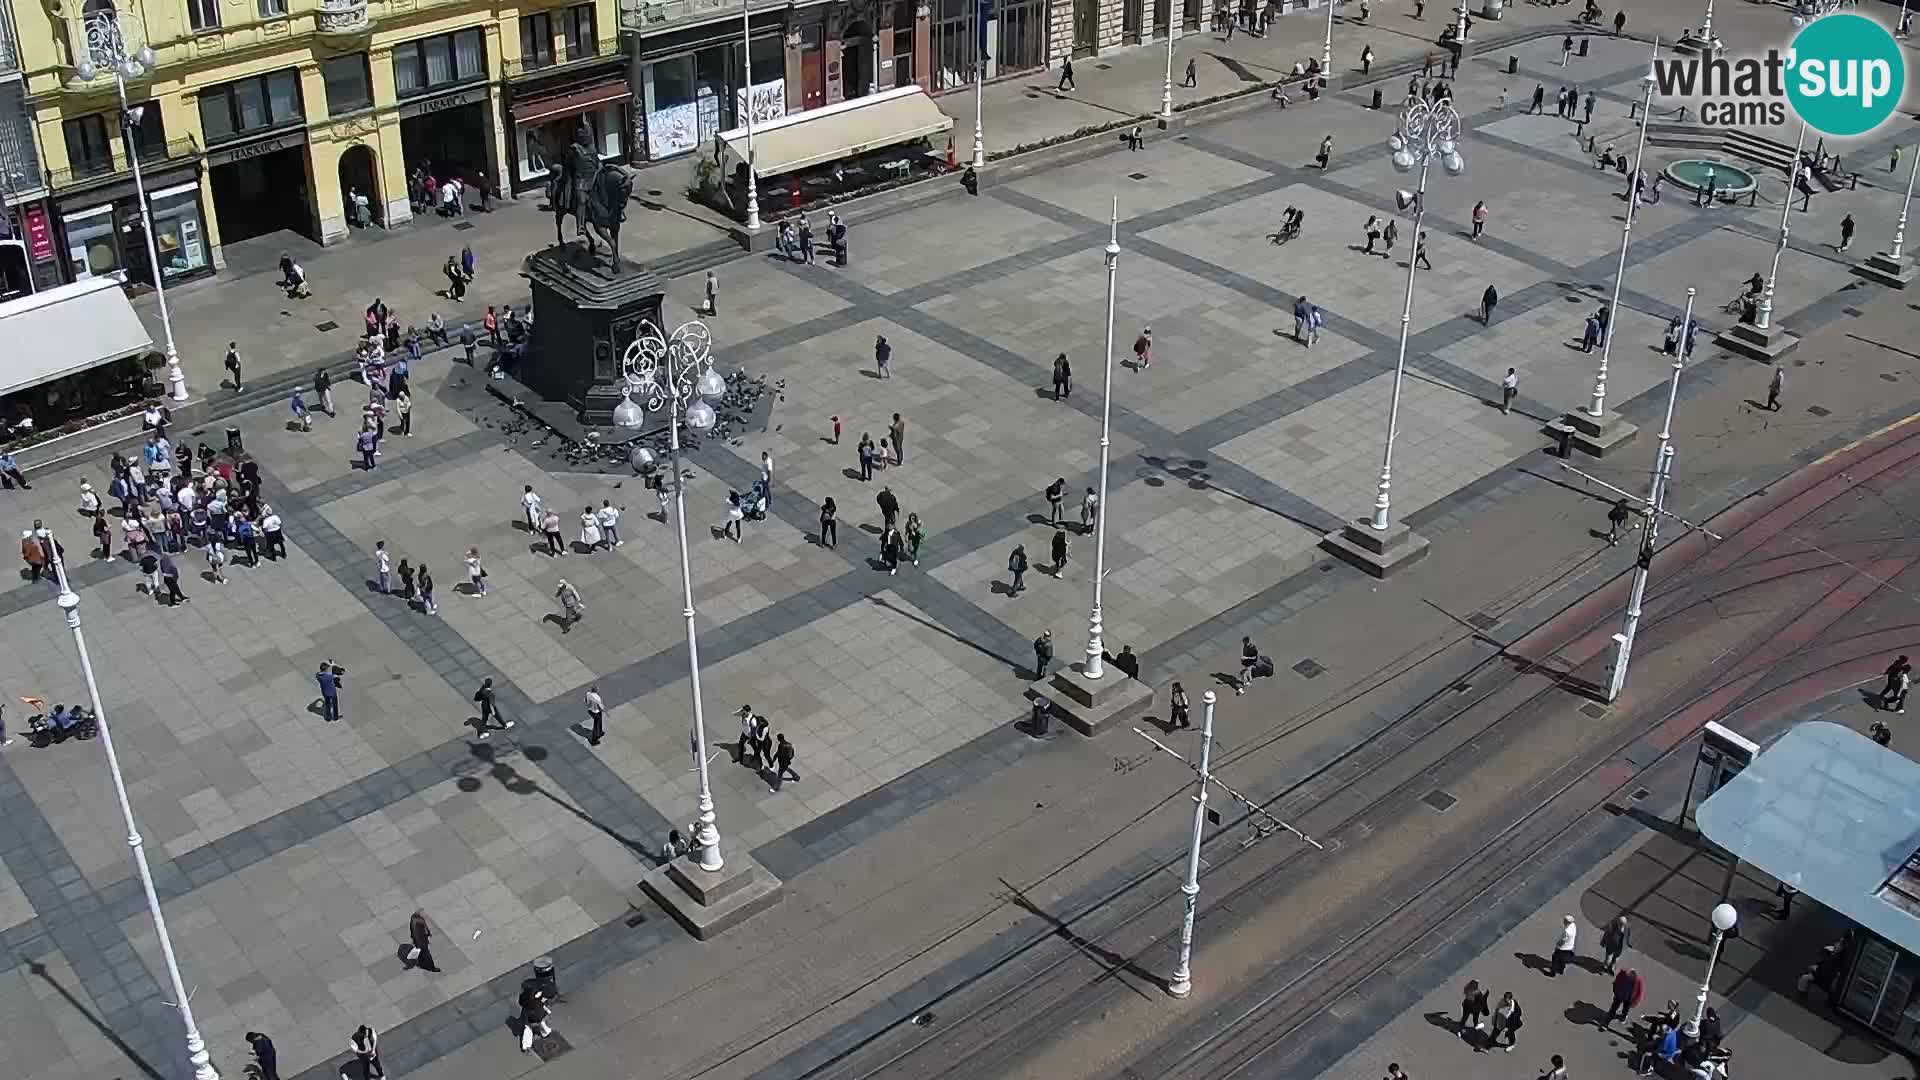 Zagreb – Ban Jelačić square